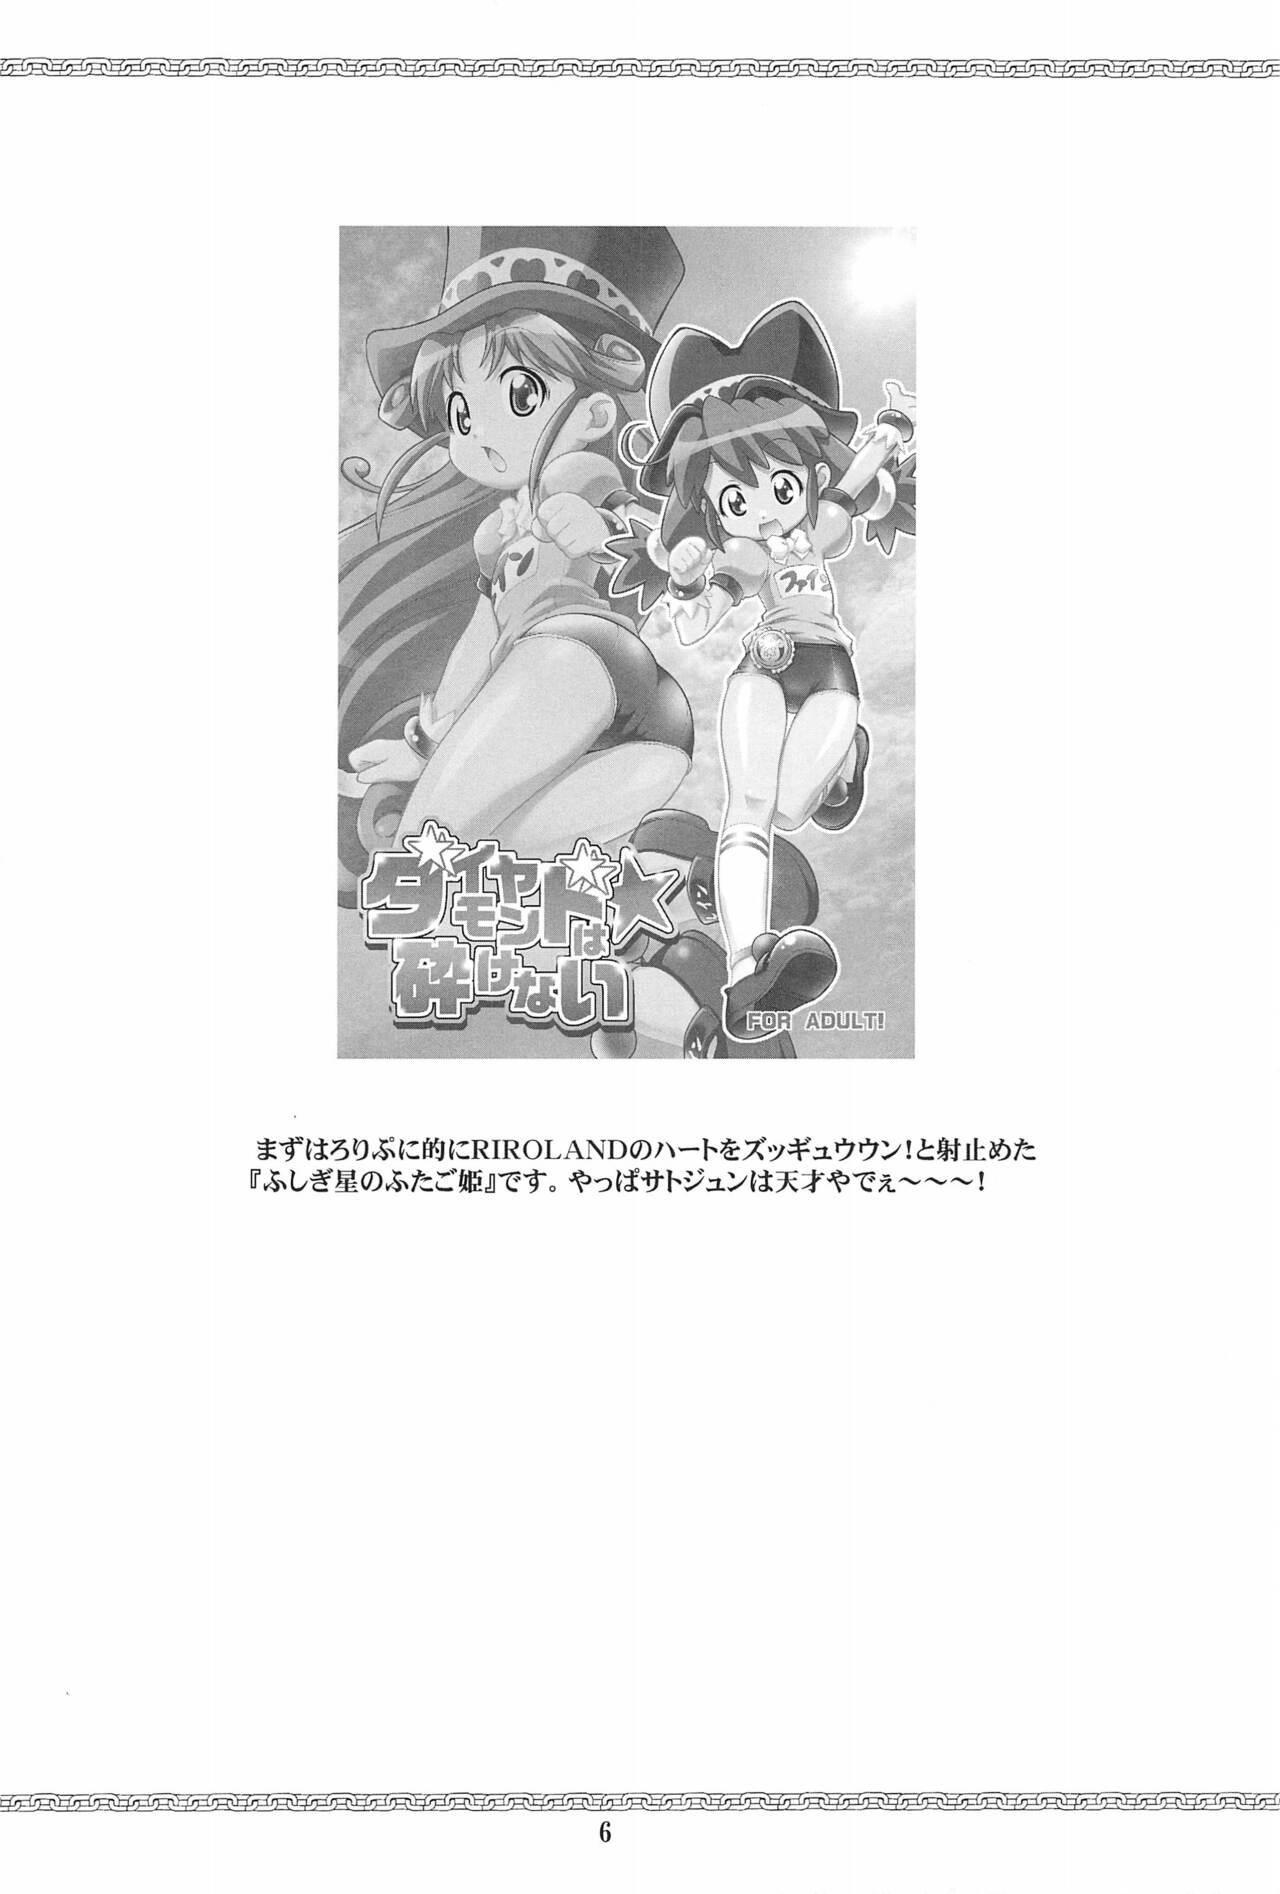 Cumshot HEAVY GAUGE 00 SUNSHINE CREATION 28 Tokubetsu-gou - Fushigiboshi no futagohime | twin princesses of the wonder planet Alternative - Page 6